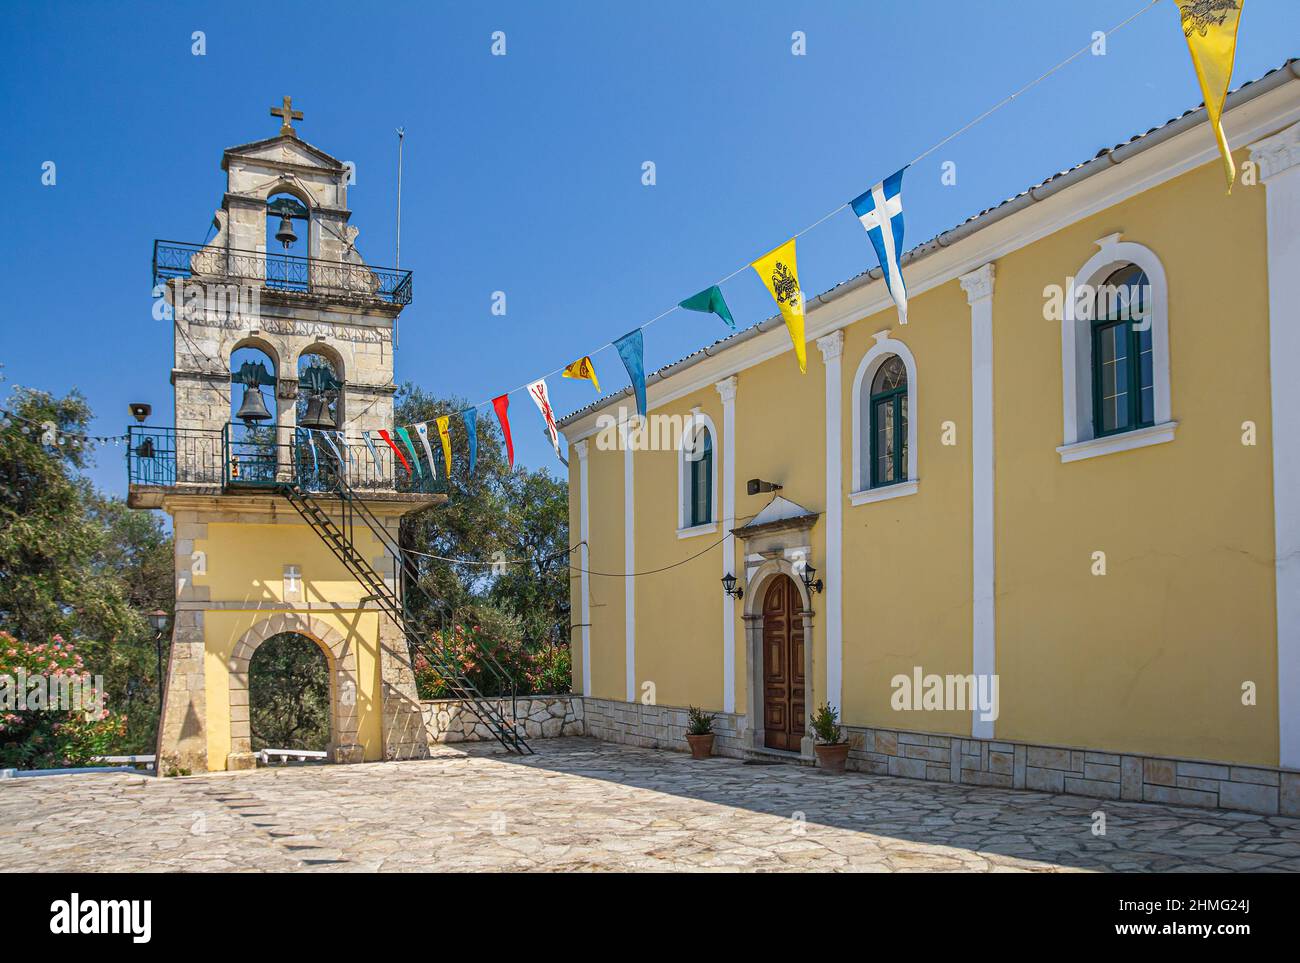 Corfu Panorama Stock Photo